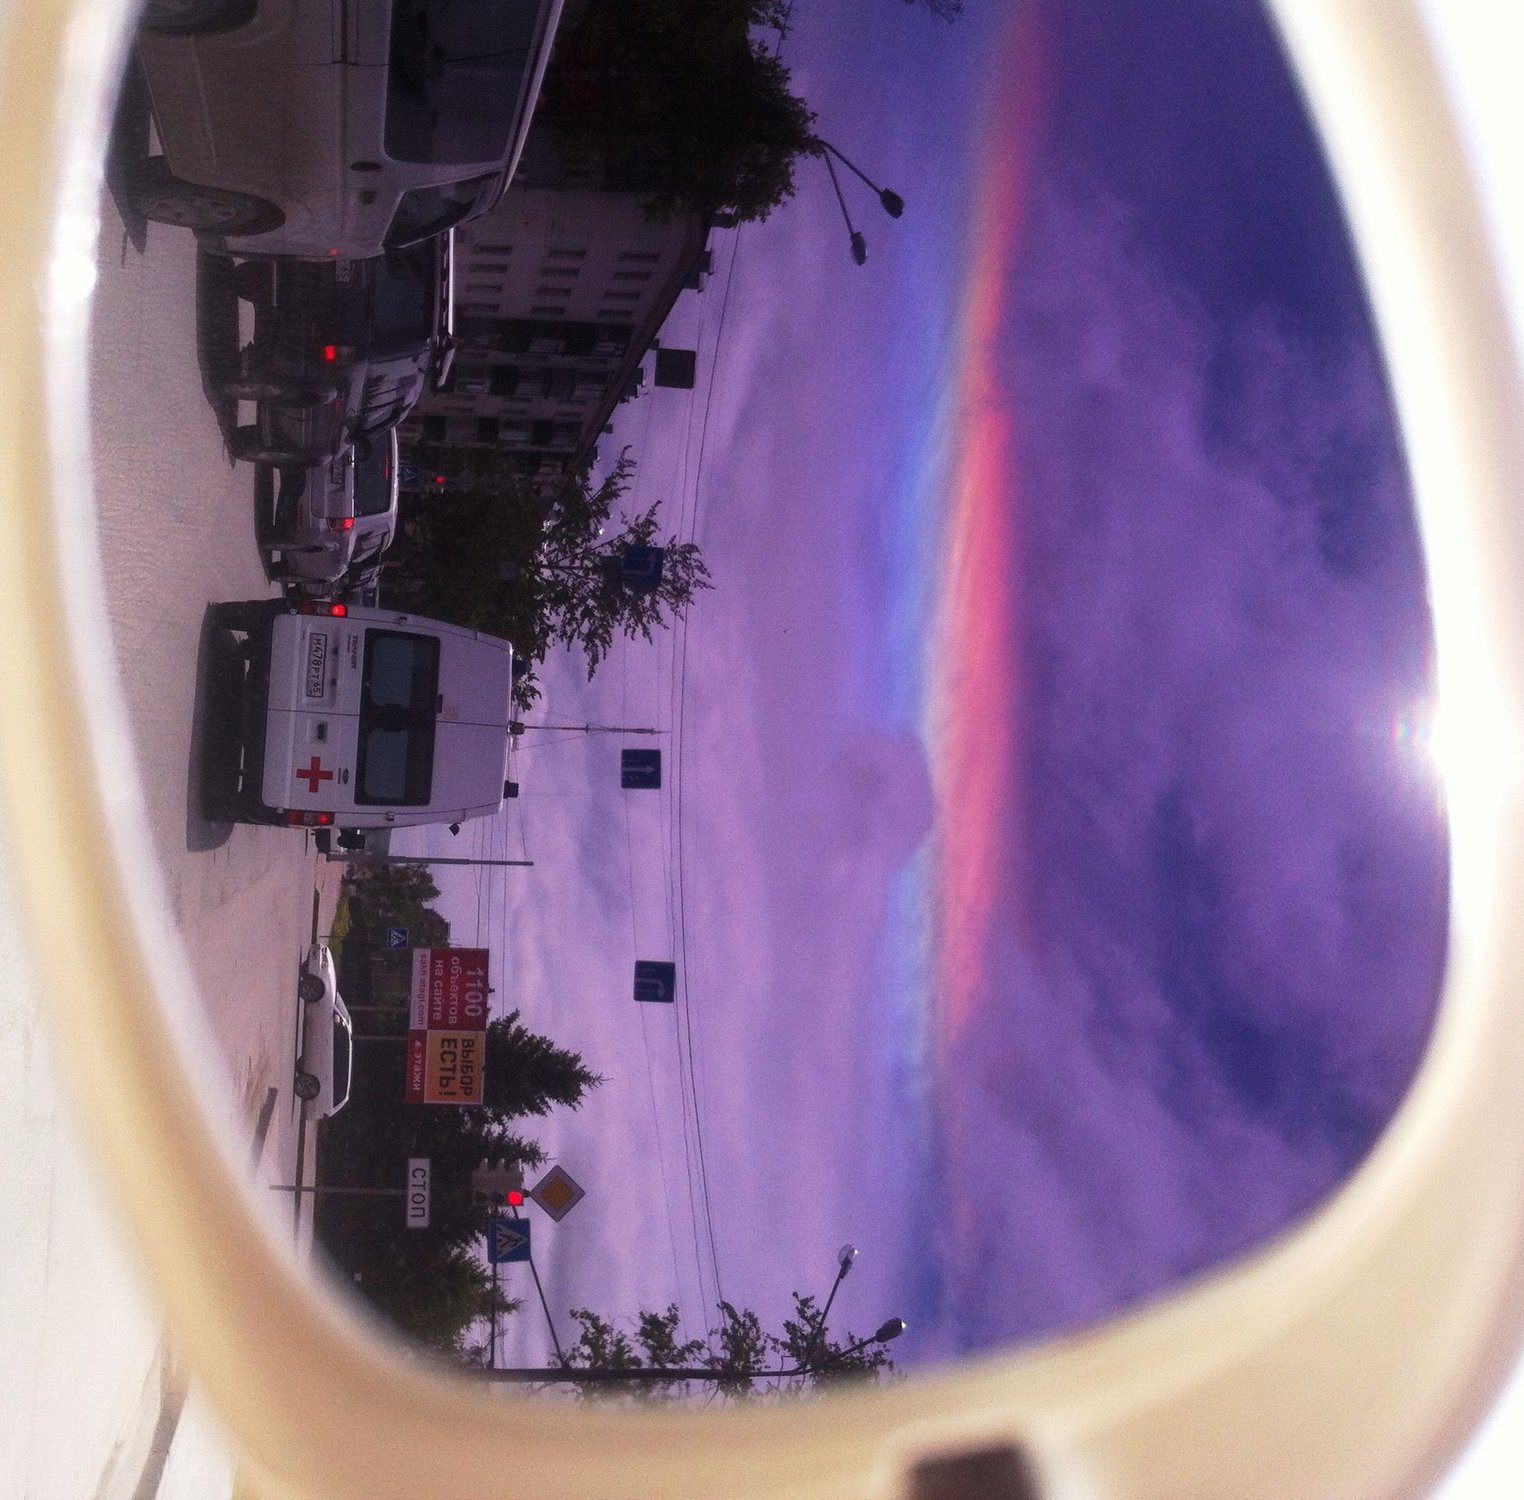 Редчайшее атмосферное явление - "огненная радуга" в небе над Южно-Сахалинском